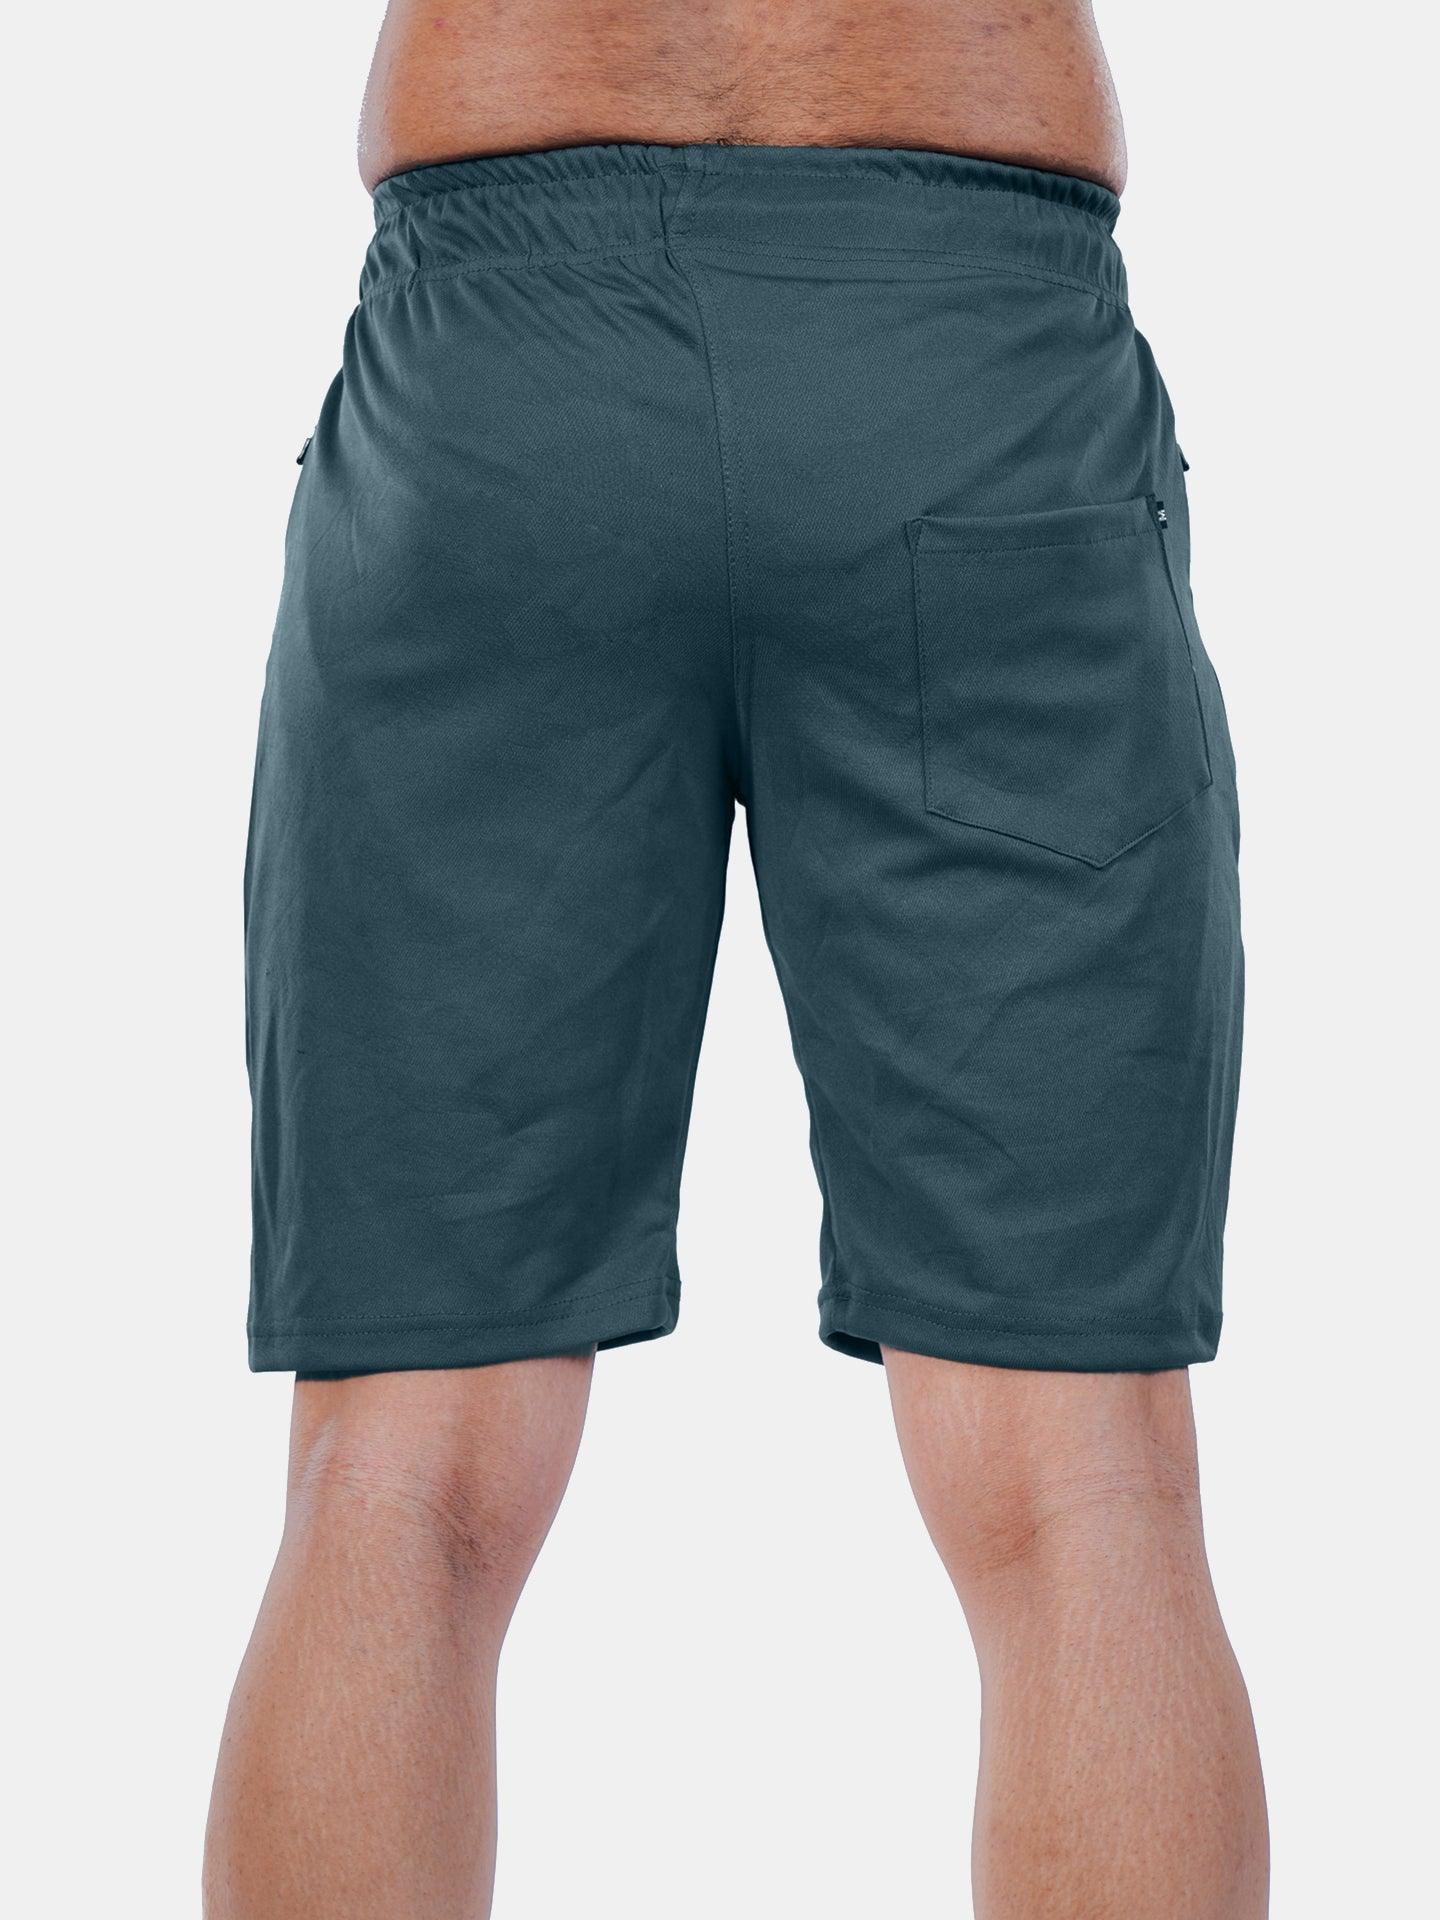 Jacquard Sea Grey Camo GymX Shorts - GymX